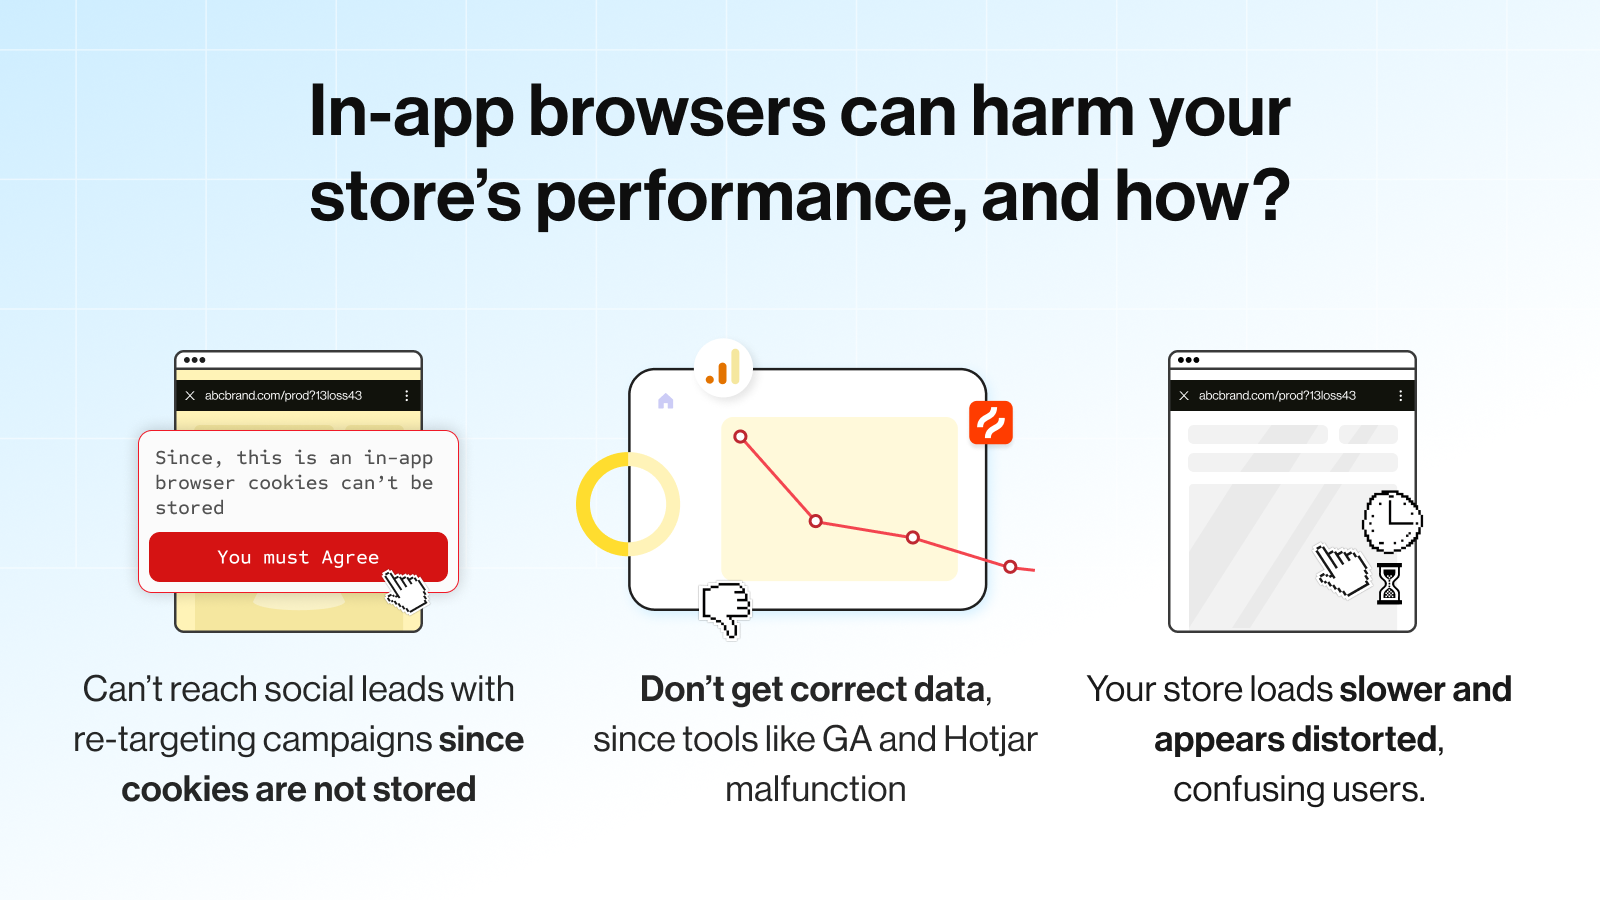 Hvordan skader in-app browsere din butiks performance?